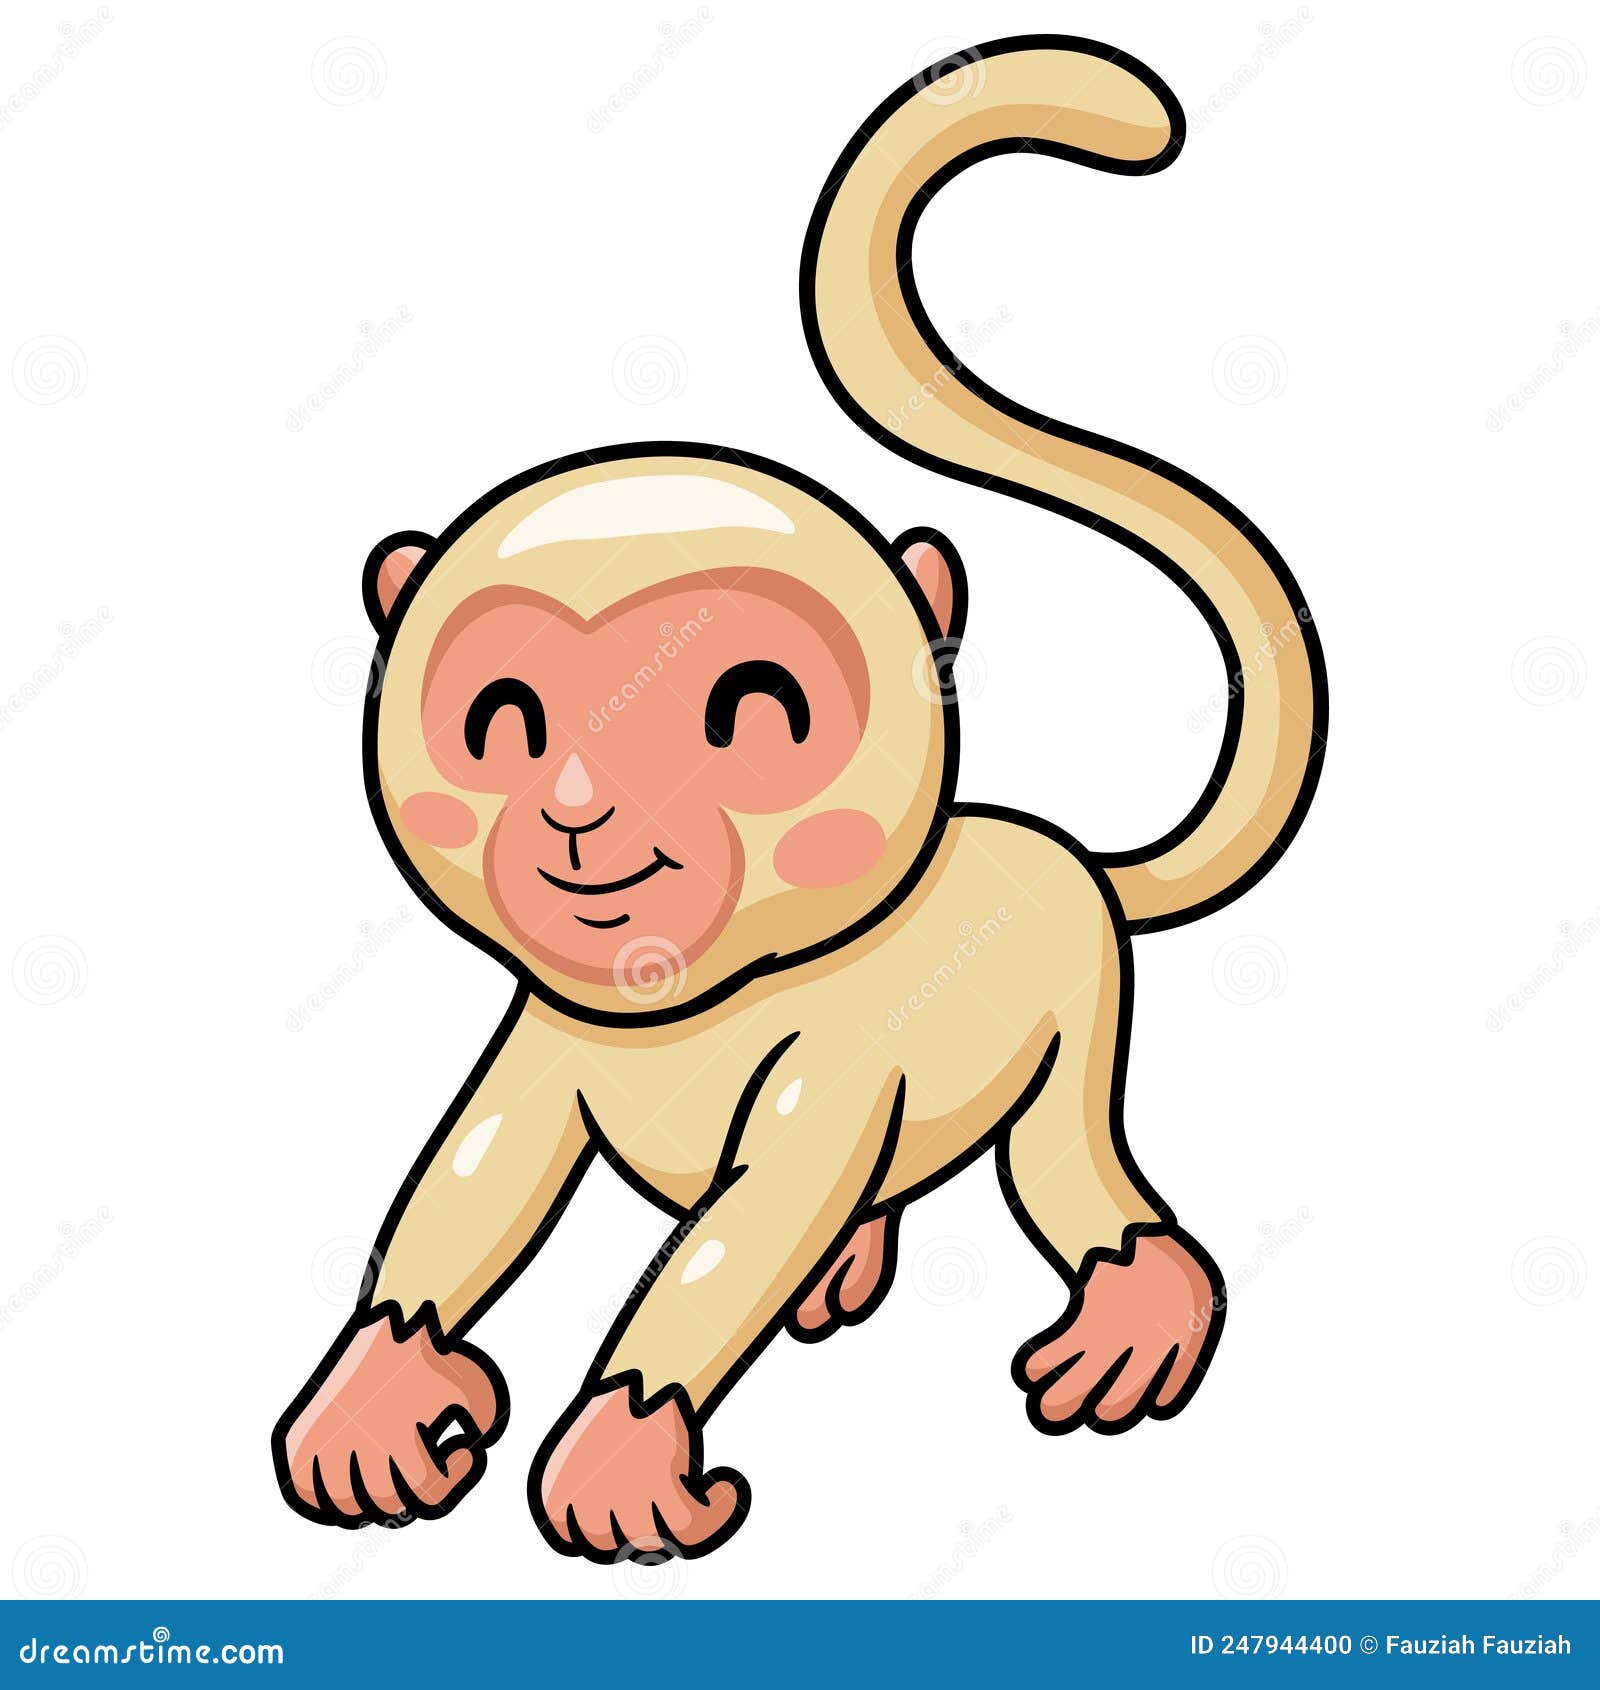 Macaco albino - Desenho de kah21 - Gartic